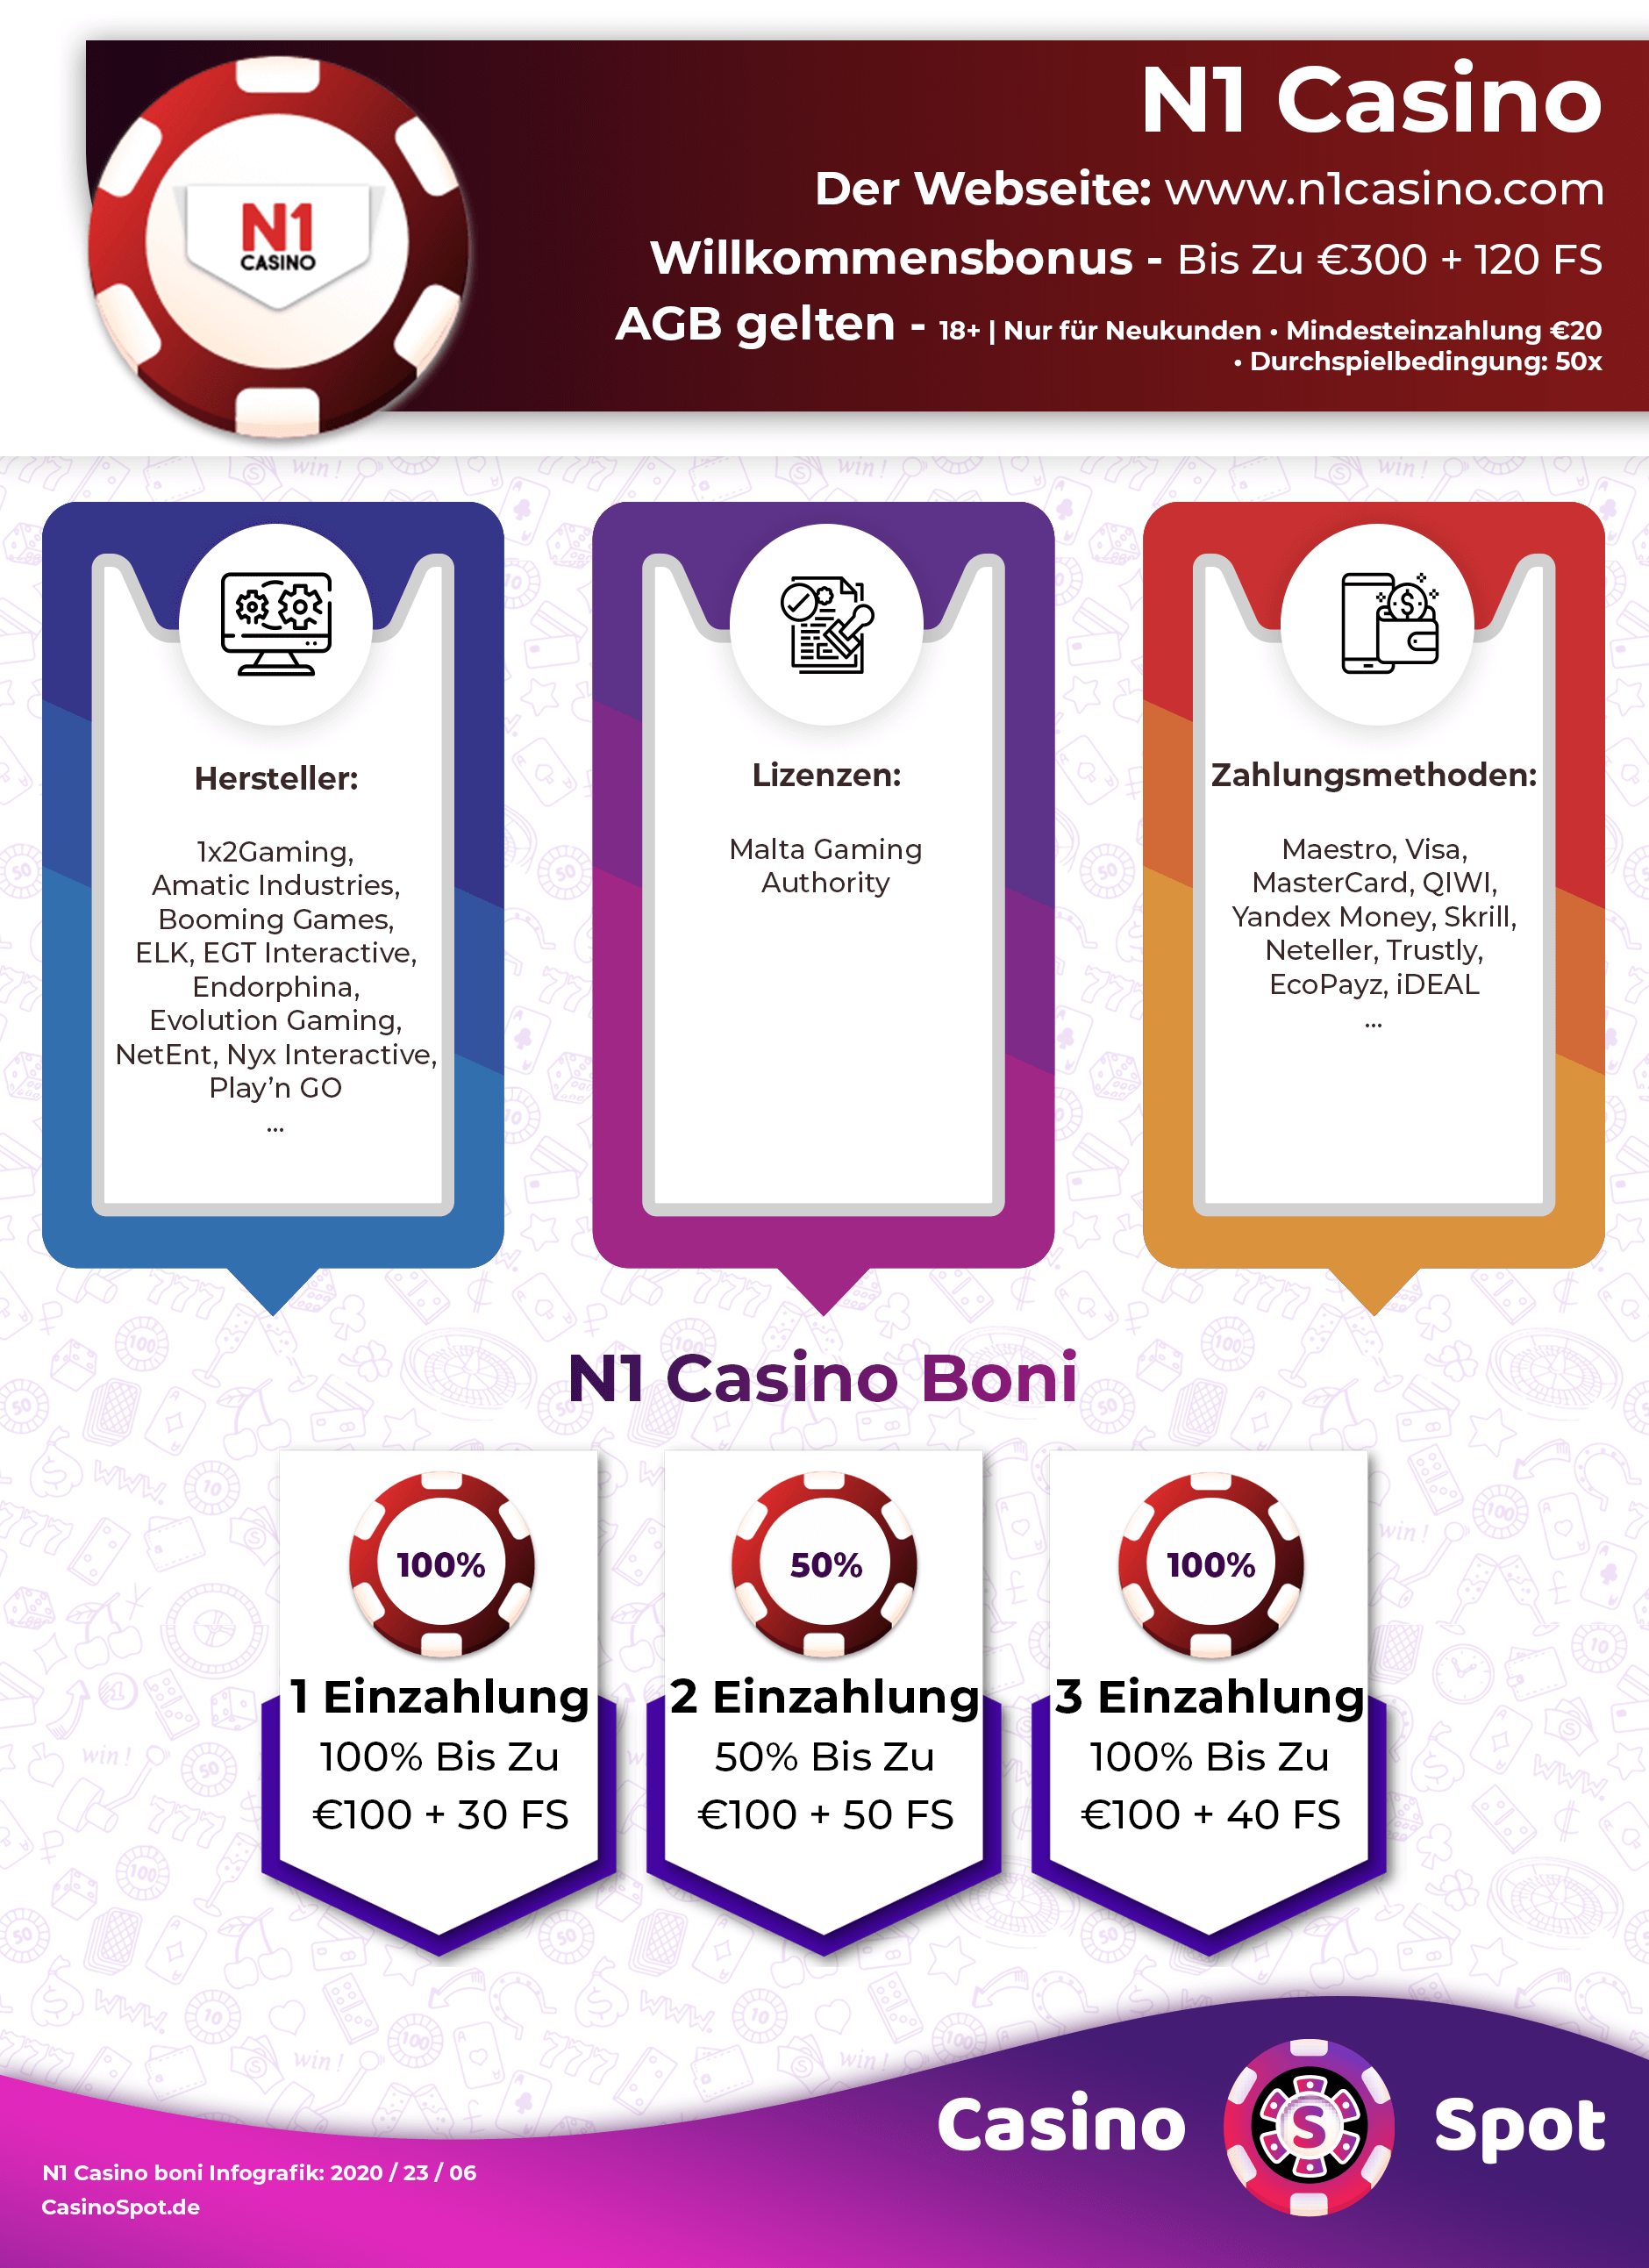 All Slots Casino Bonus Code Ohne Einzahlung